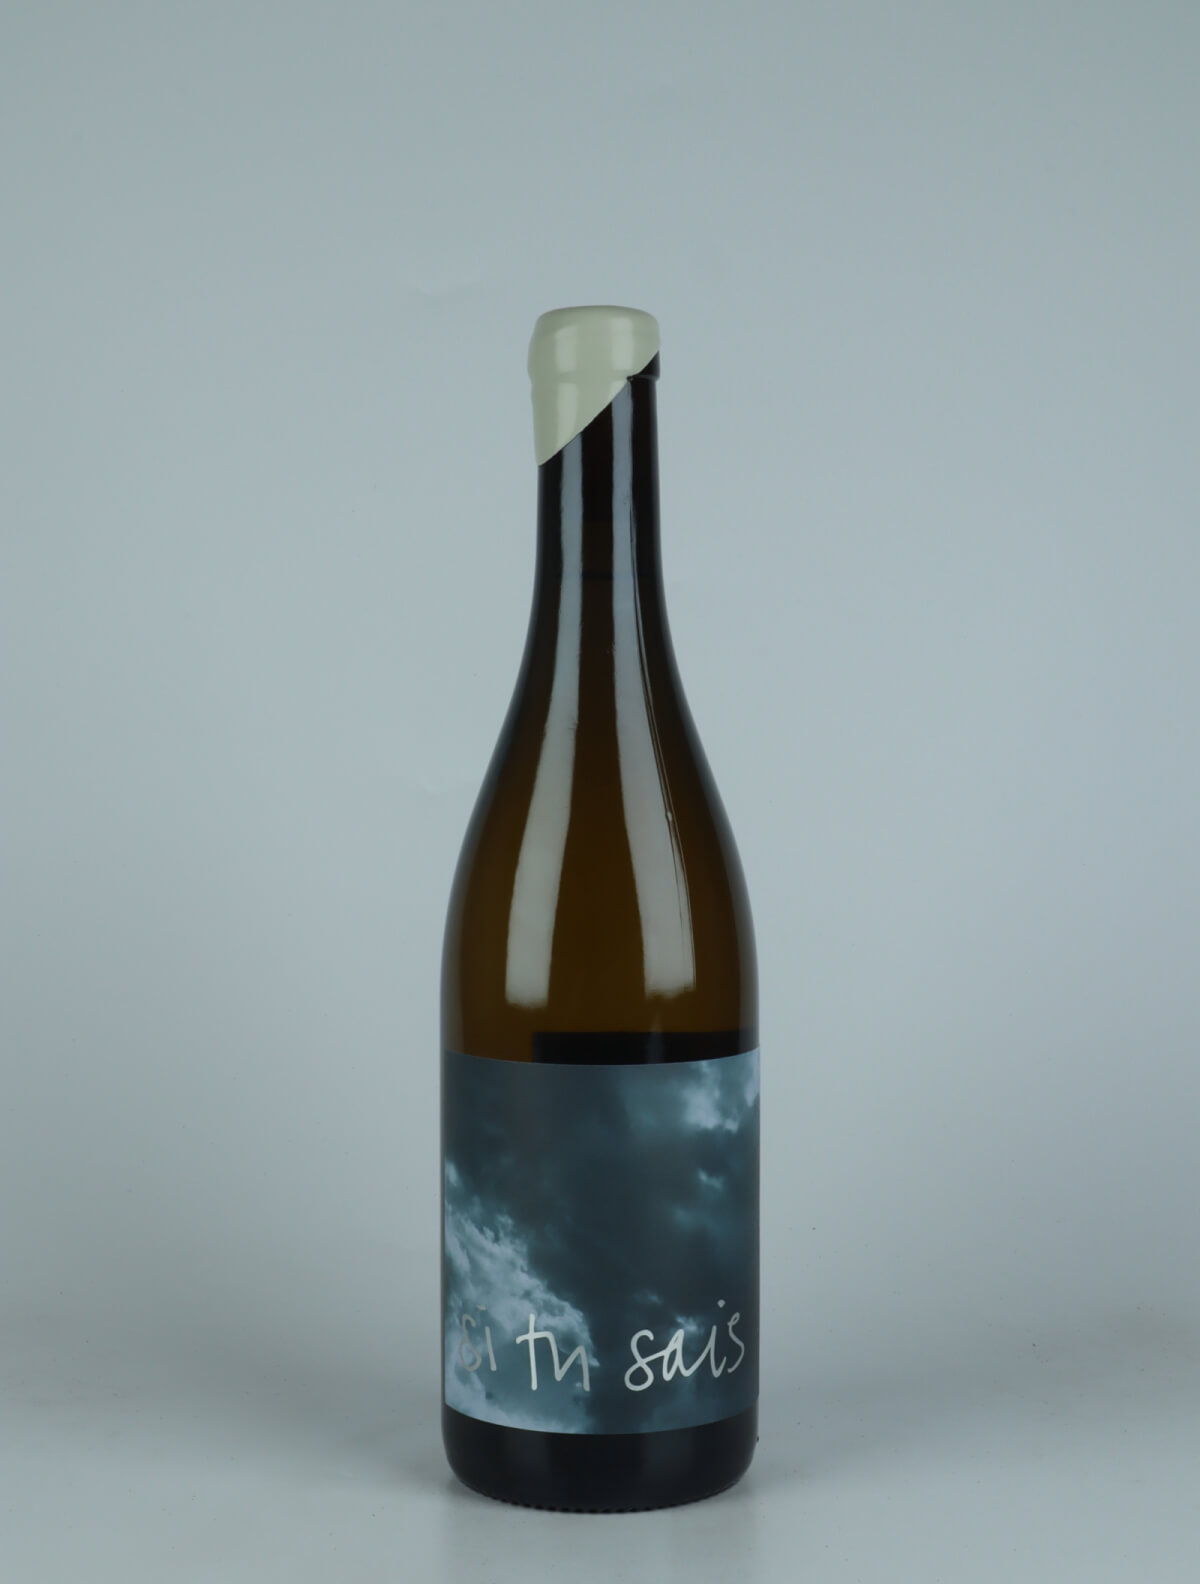 En flaske 2022 Pernand-Vergelesses - En Caradeux Hvidvin fra Si Tu Sais, Bourgogne i Frankrig